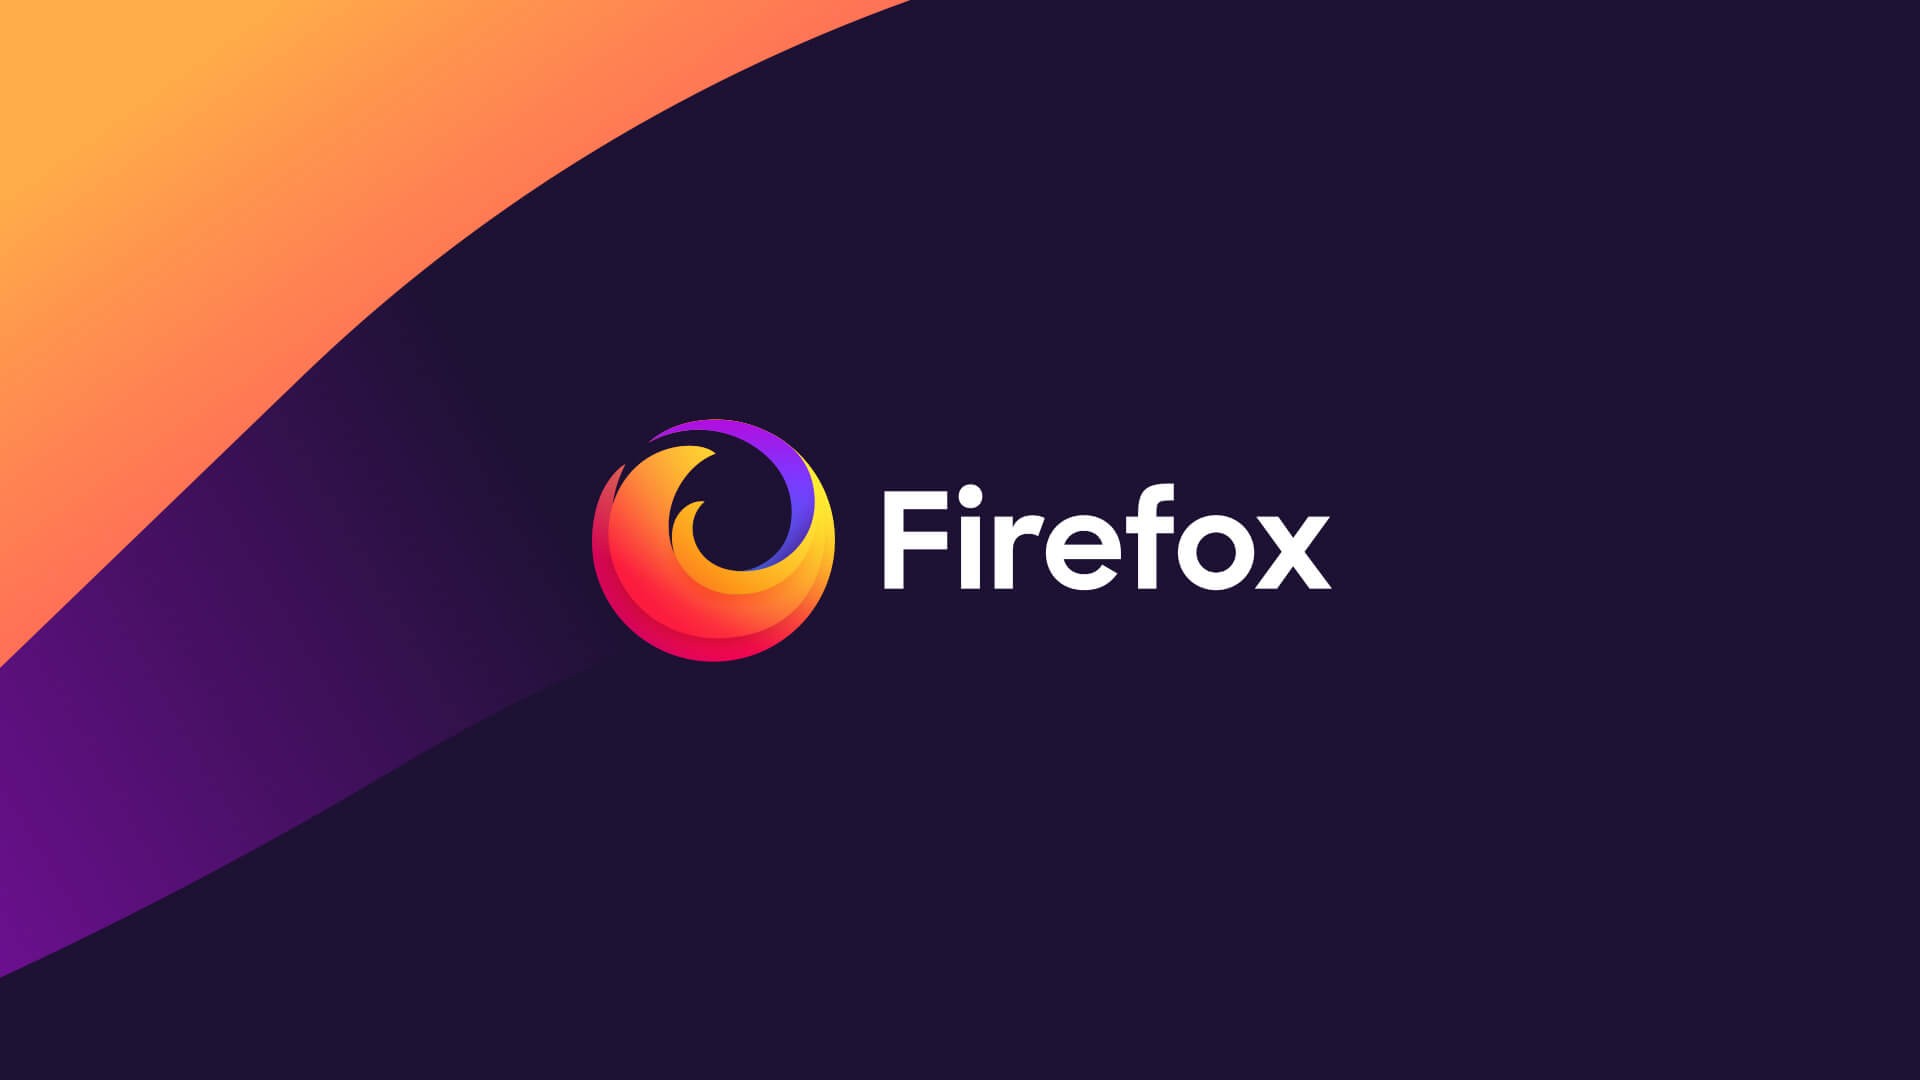 تحميل متصفح فايرفوكس افضل متصفح للامان firefox browser